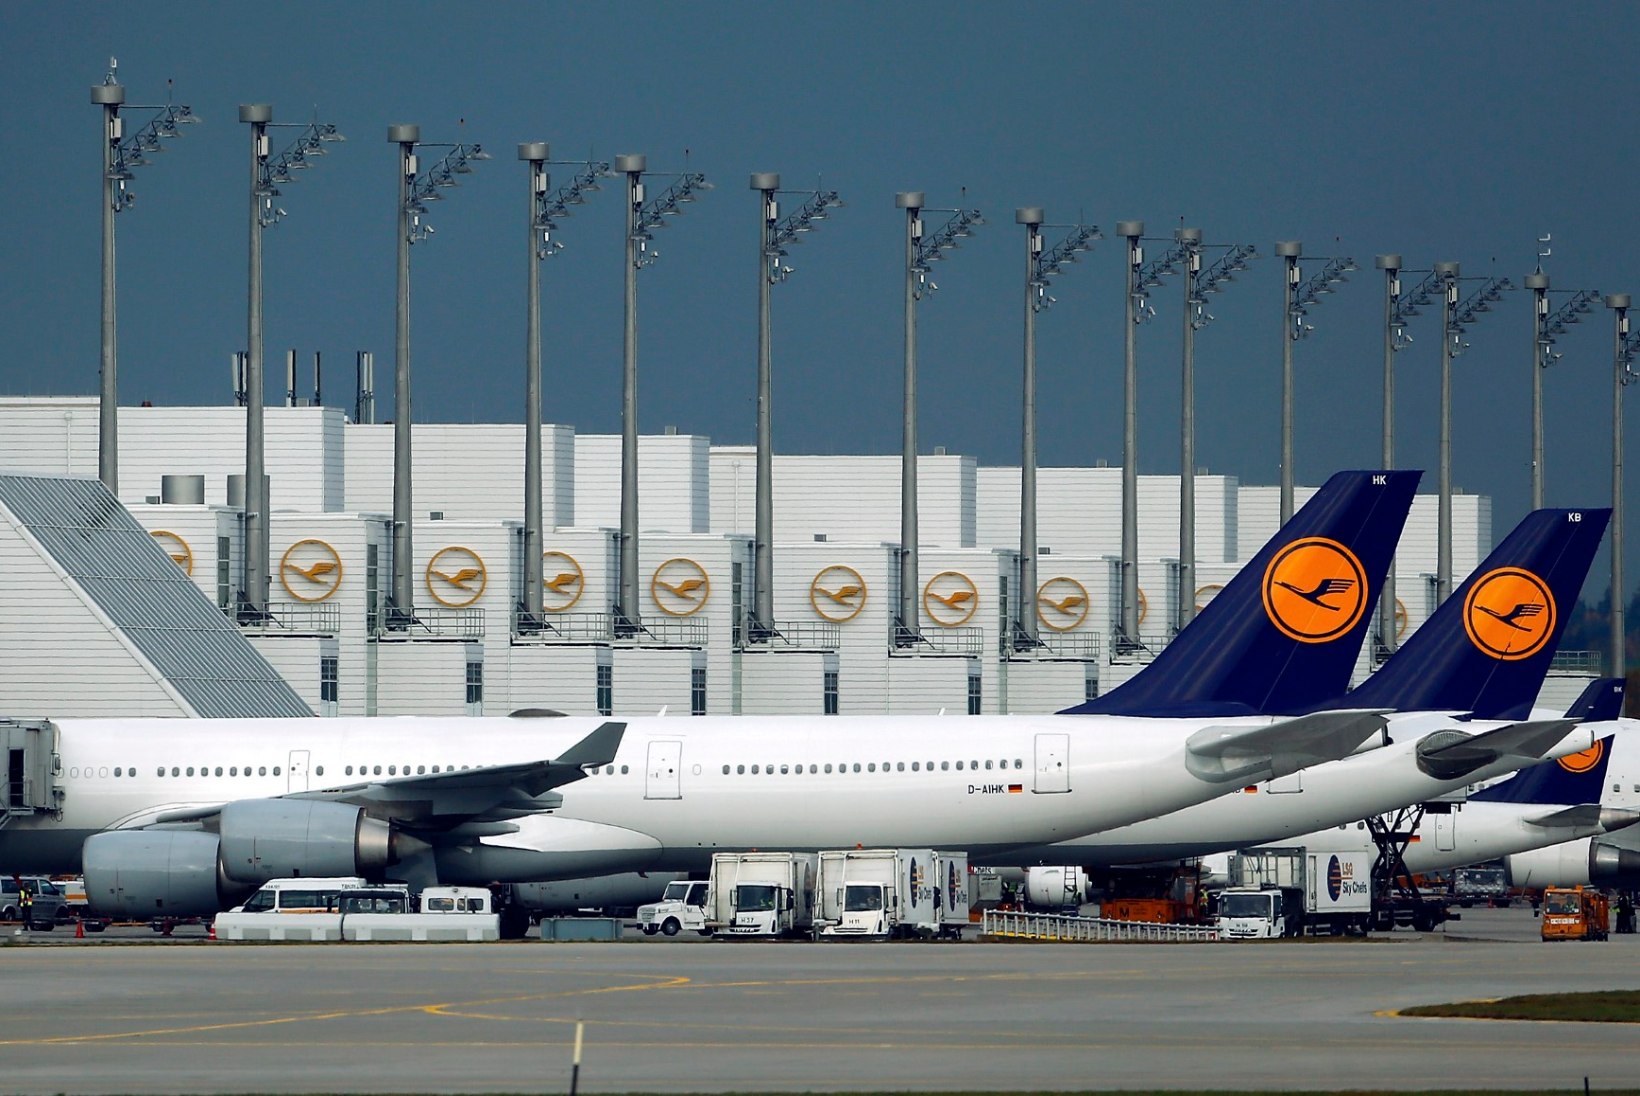 Lufthansa lennuk oleks äärepealt drooniga kokku põrganud